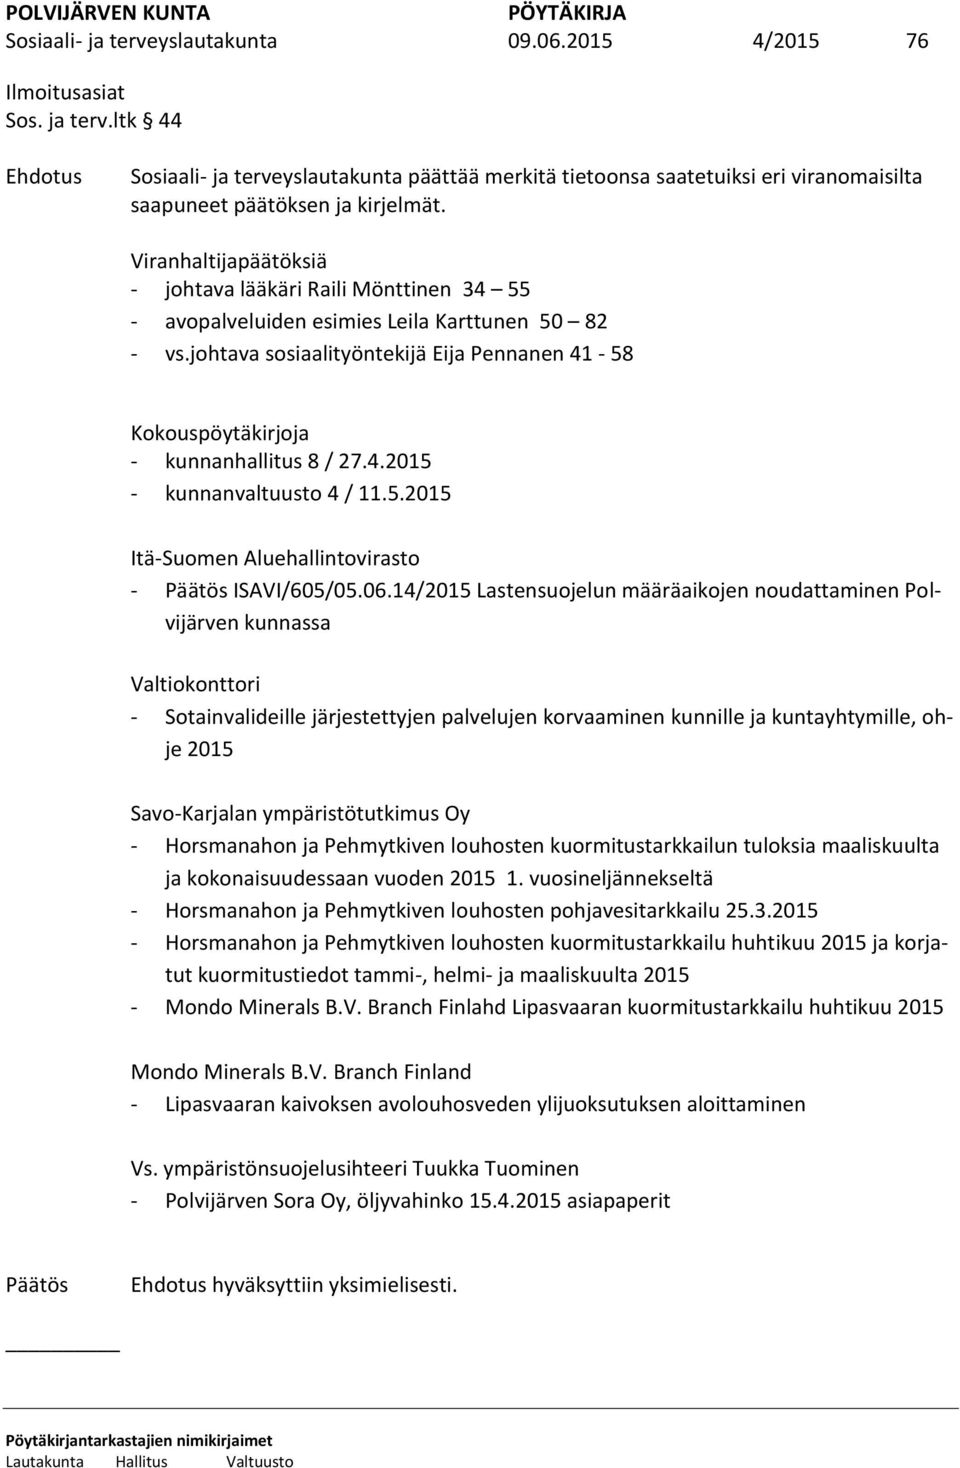 johtava sosiaalityöntekijä Eija Pennanen 41-58 Kokouspöytäkirjoja - kunnanhallitus 8 / 27.4.2015 - kunnanvaltuusto 4 / 11.5.2015 Itä-Suomen Aluehallintovirasto - ISAVI/605/05.06.